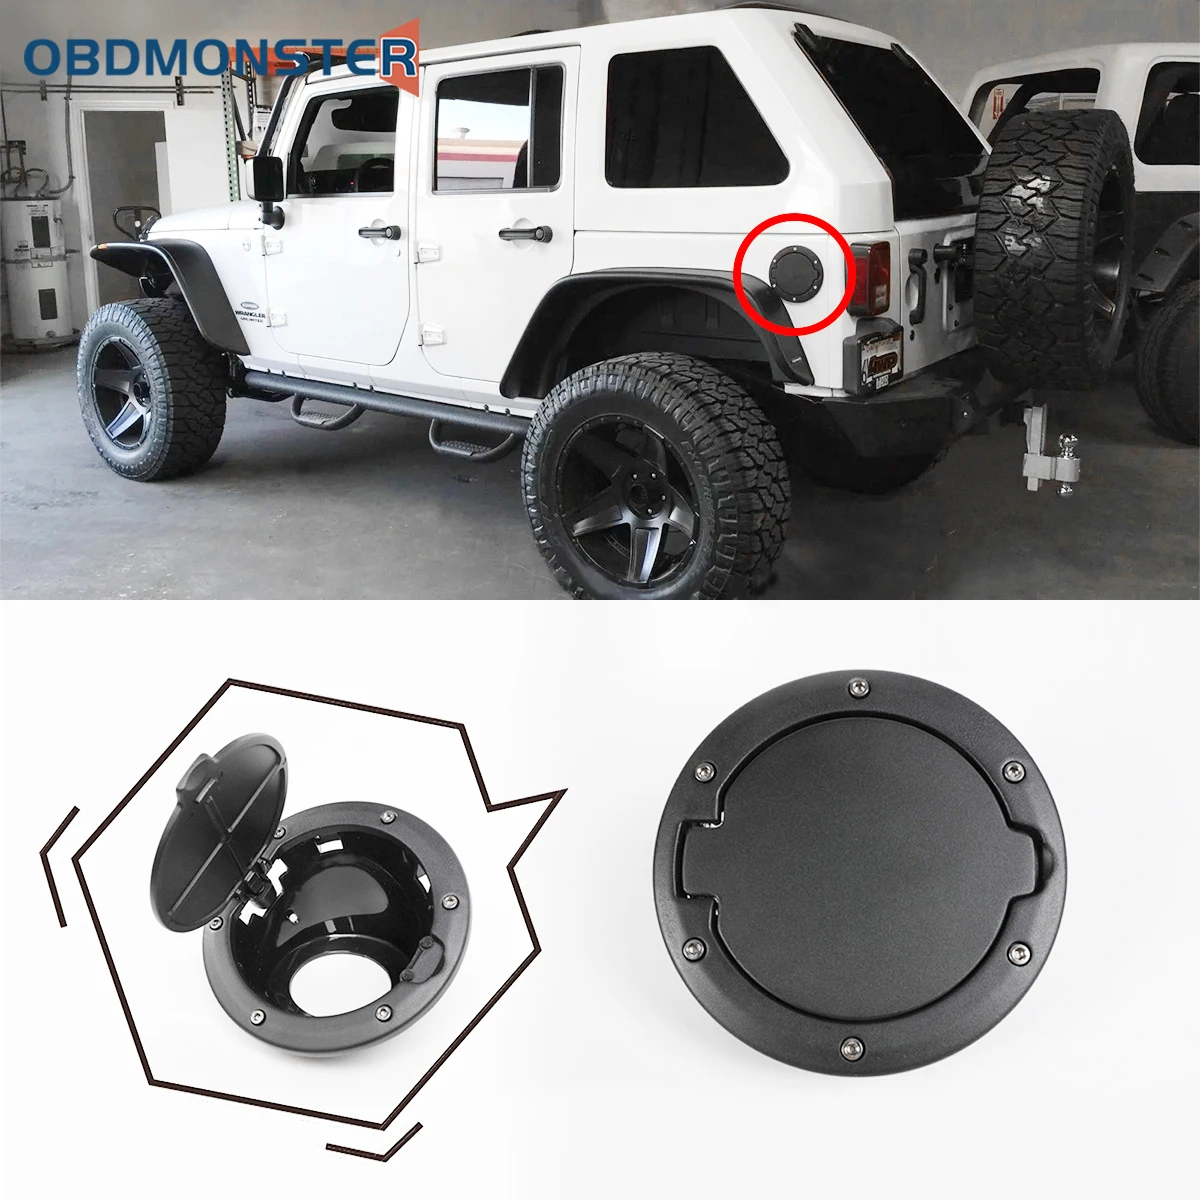 Car Fuel Filler Tank Cover Car Oil Fuel Filler Cap Black Gas Cap Car Accessories for 2007-2018 Jeep Wrangler JK